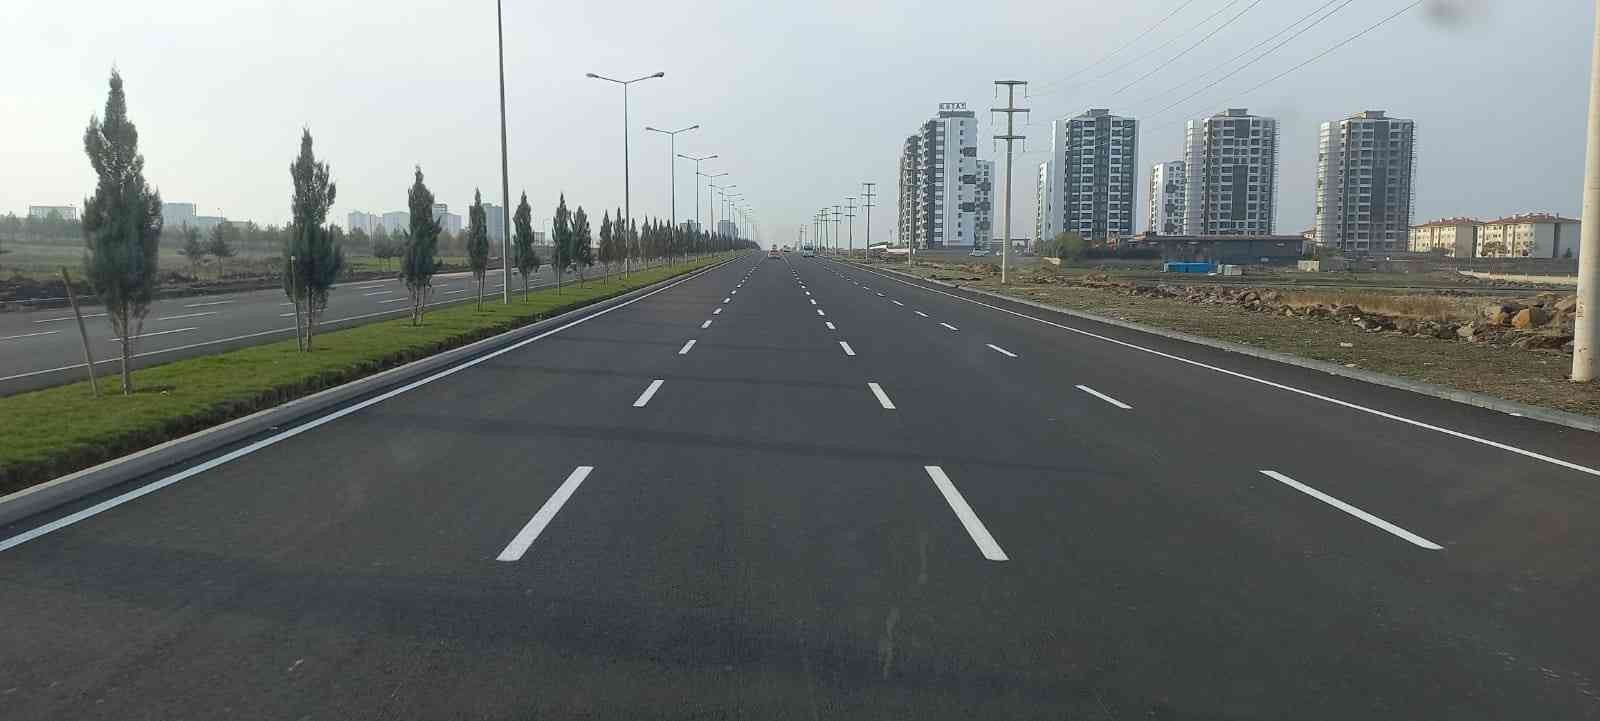 Diyarbakır’da trafik güvenliği için bin 338 kilometre yol çizgisi yapıldı #diyarbakir